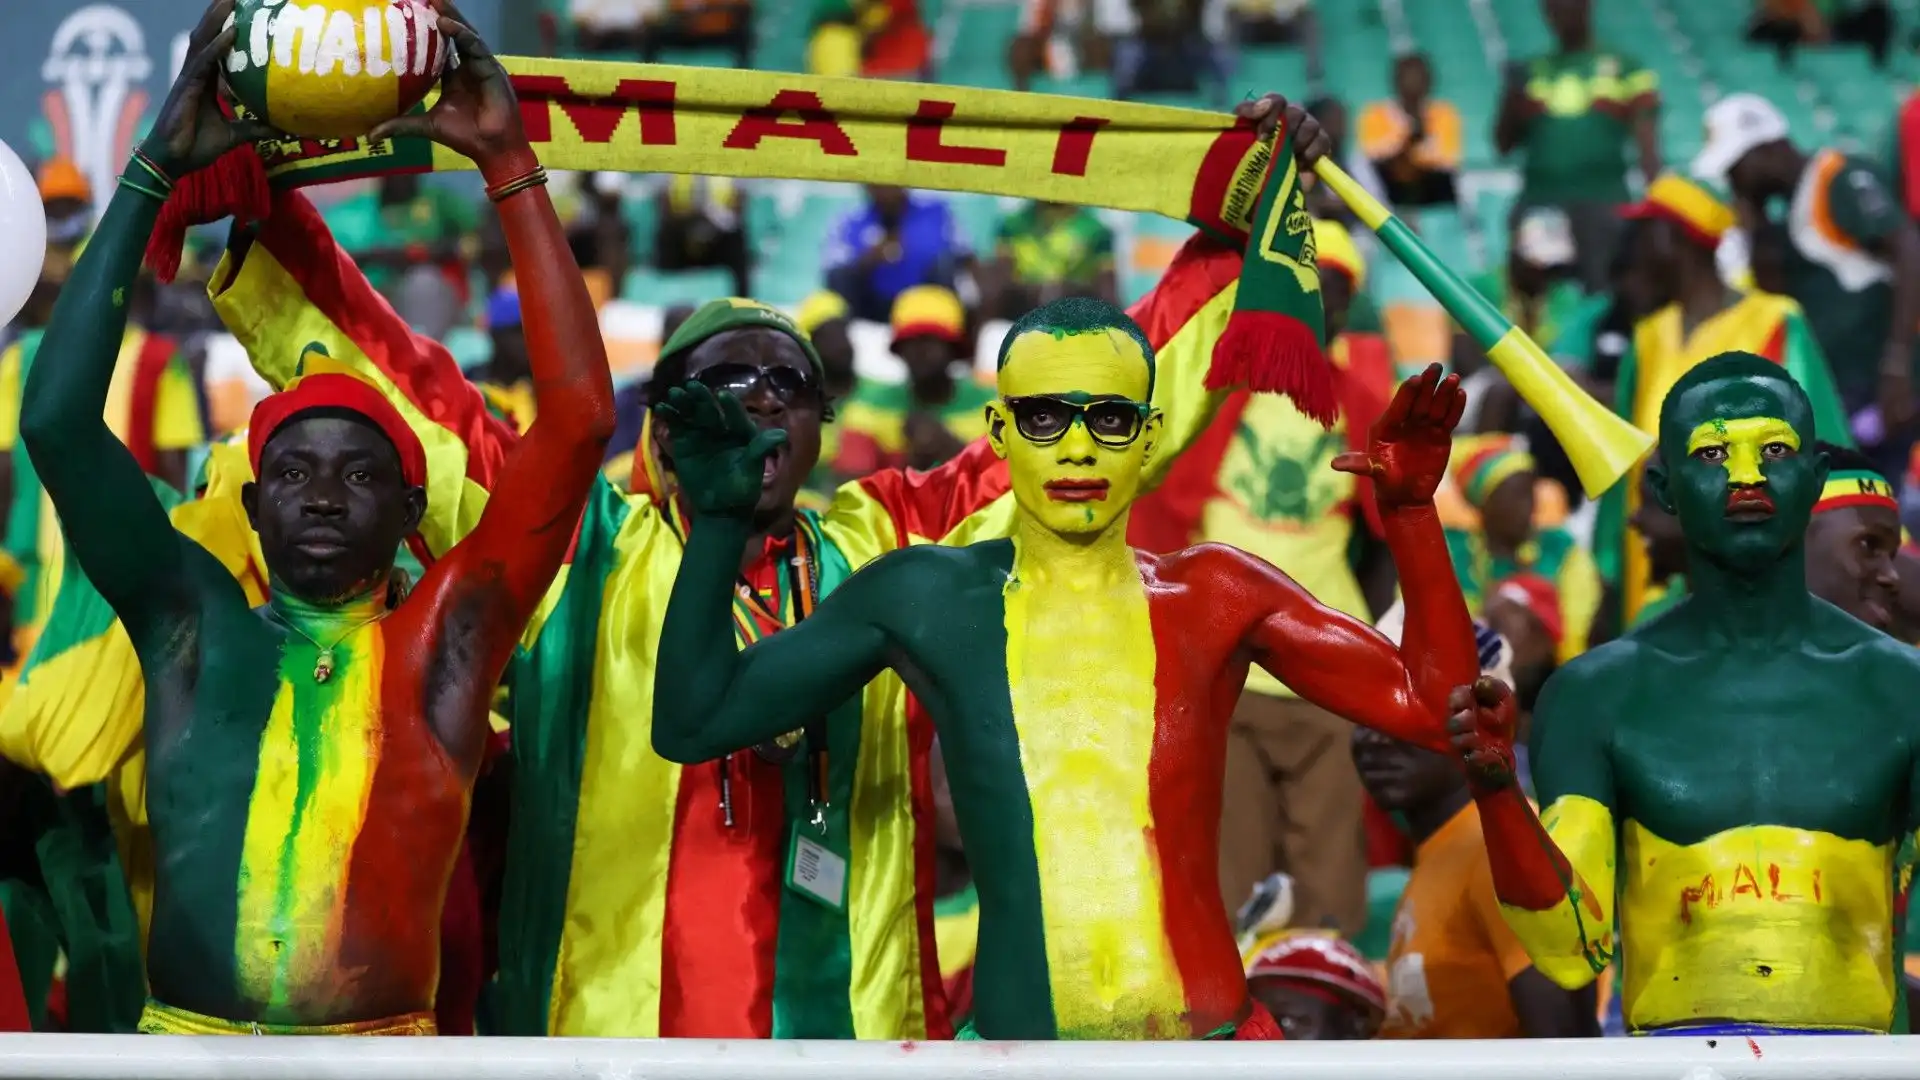 Il Mali non è ancora riuscito a vincere la Coppa d'Africa: i tifosi sperano possa trionfare quest'anno